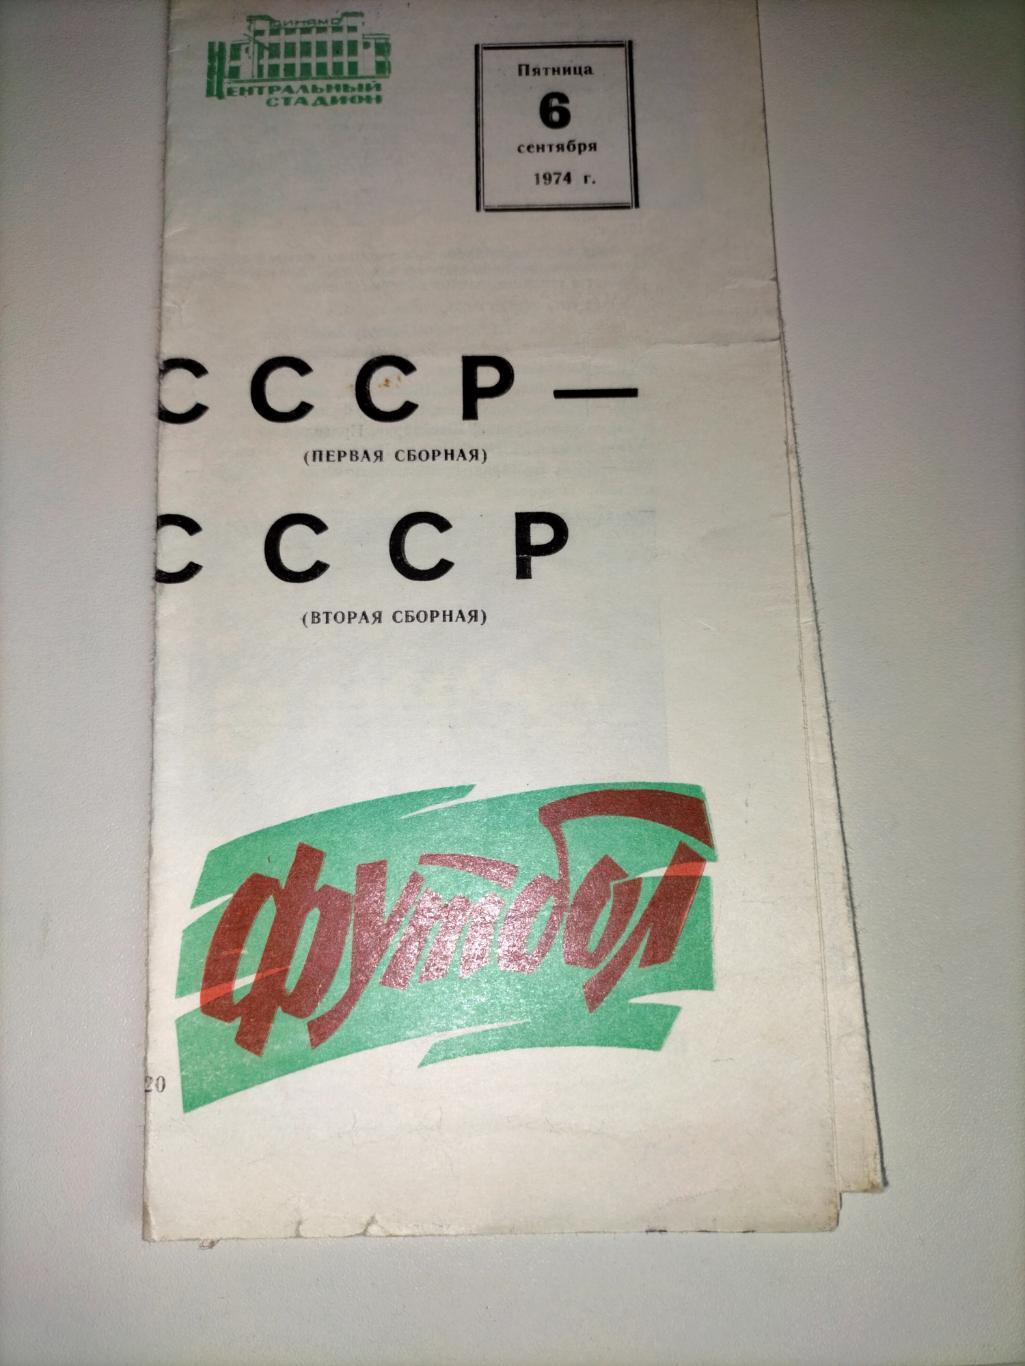 Сборная СССР первая - Сборная СССР вторая 1974